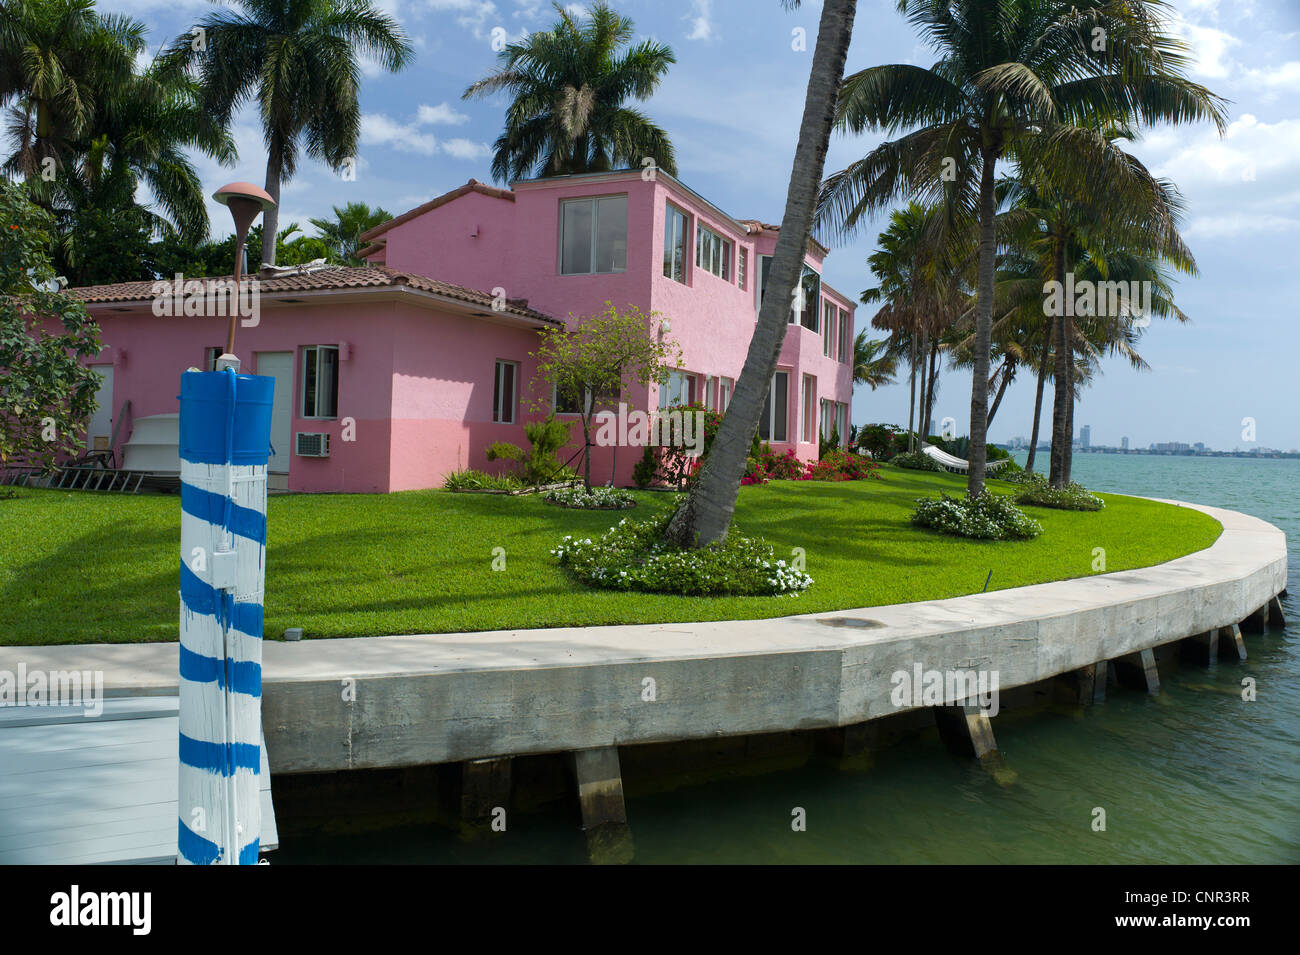 HOUSE MIAMI FLORIDA Stock Photo